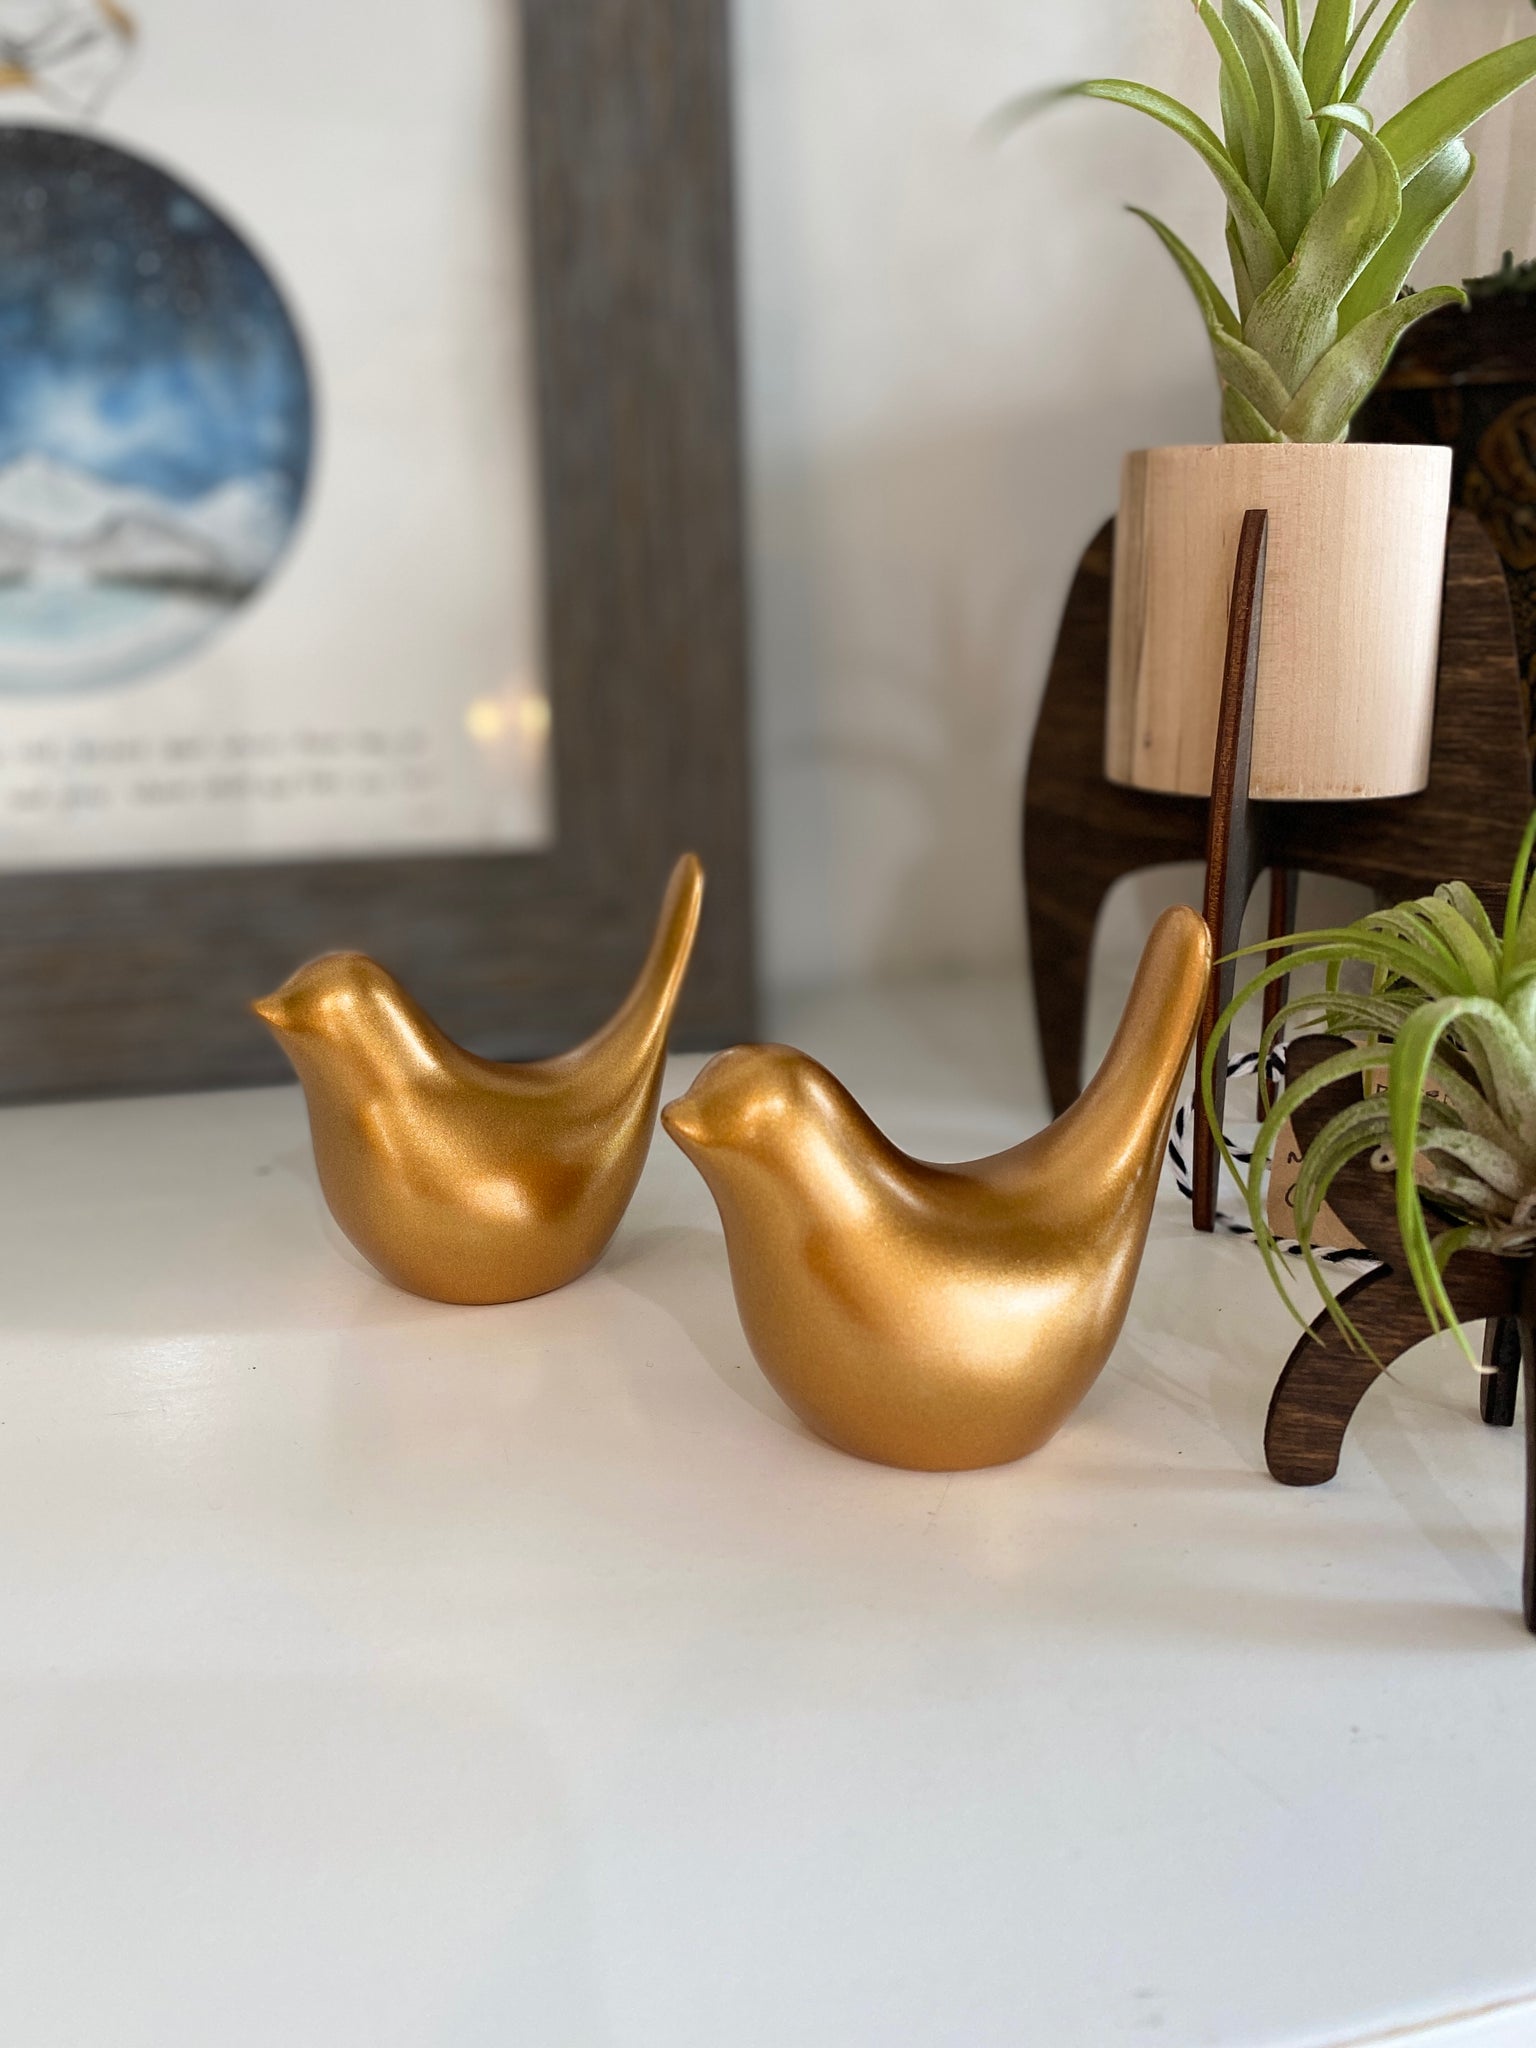 Gold Bird Figurine